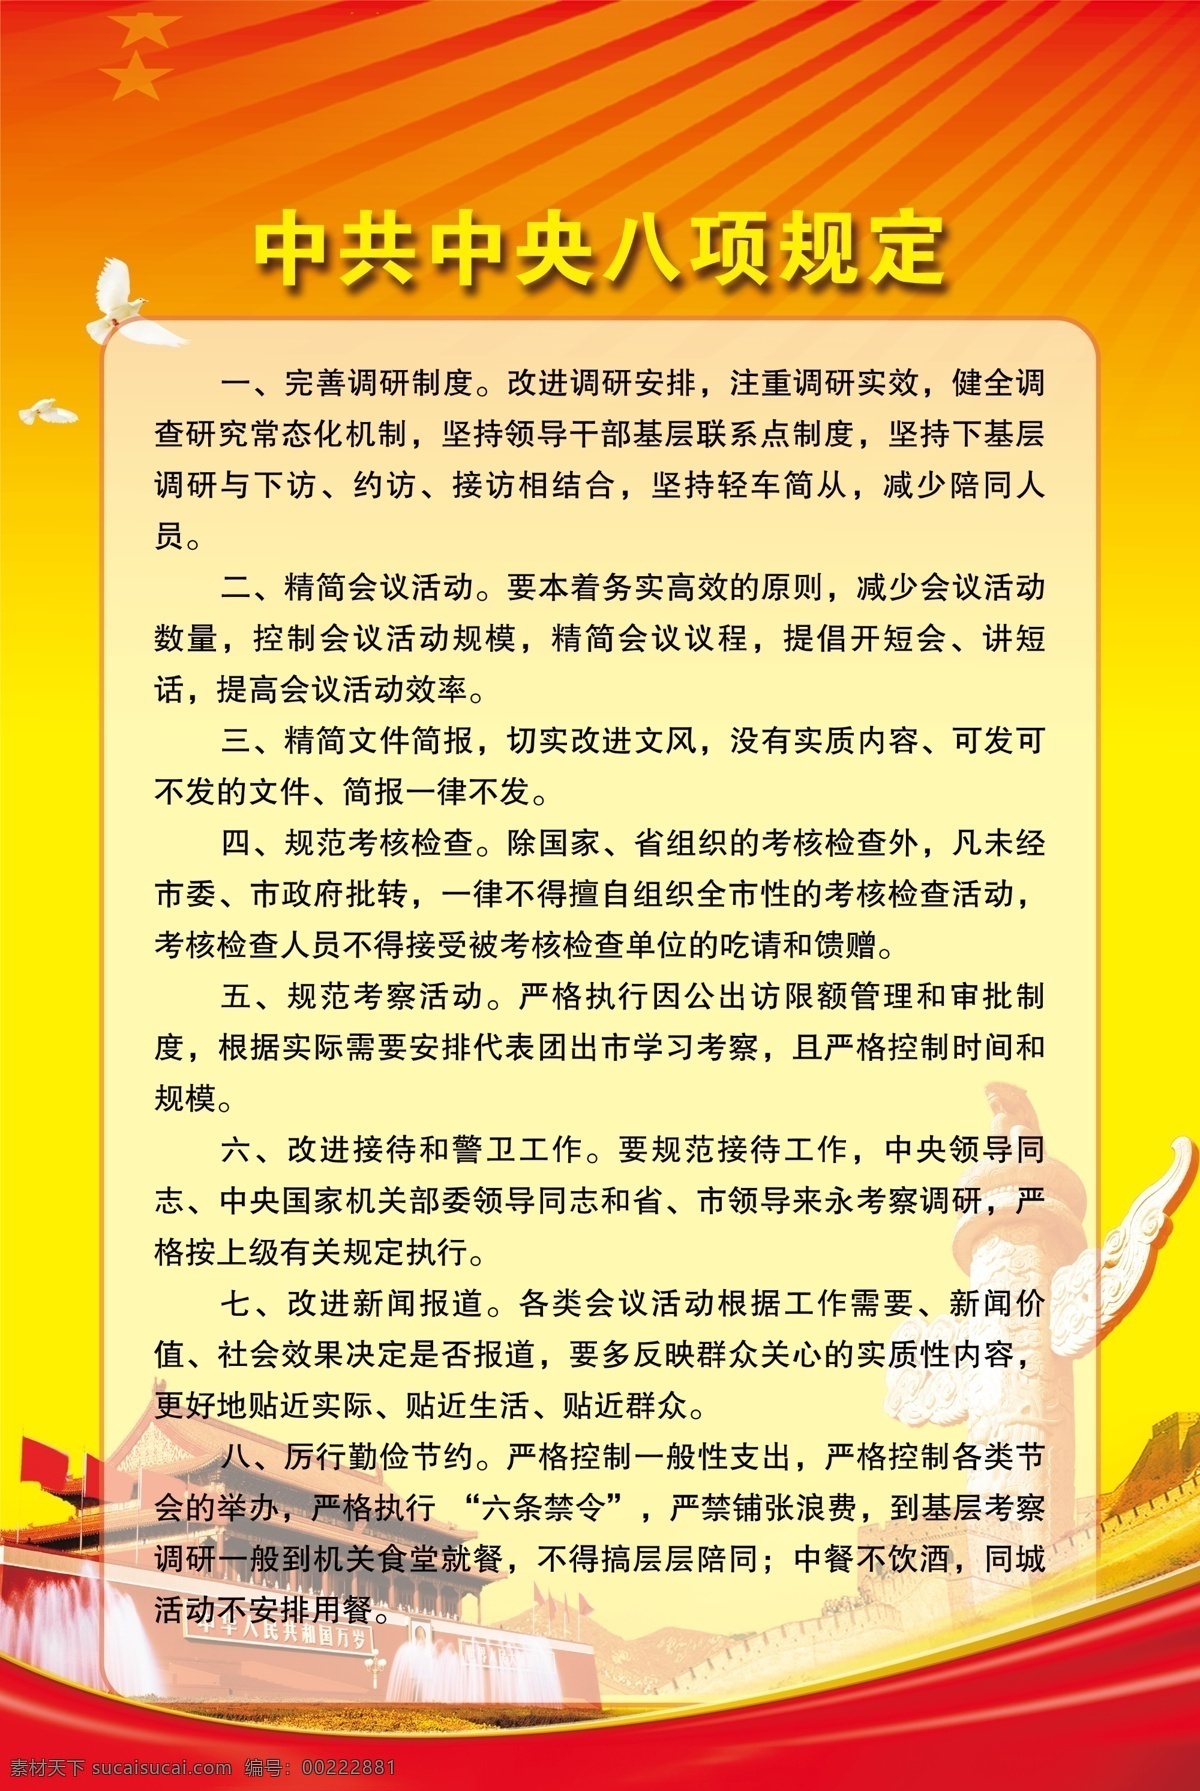 中共中央 八 项 规定 八项规定 党建 天安门 华表 长城 红色背景 展板模板